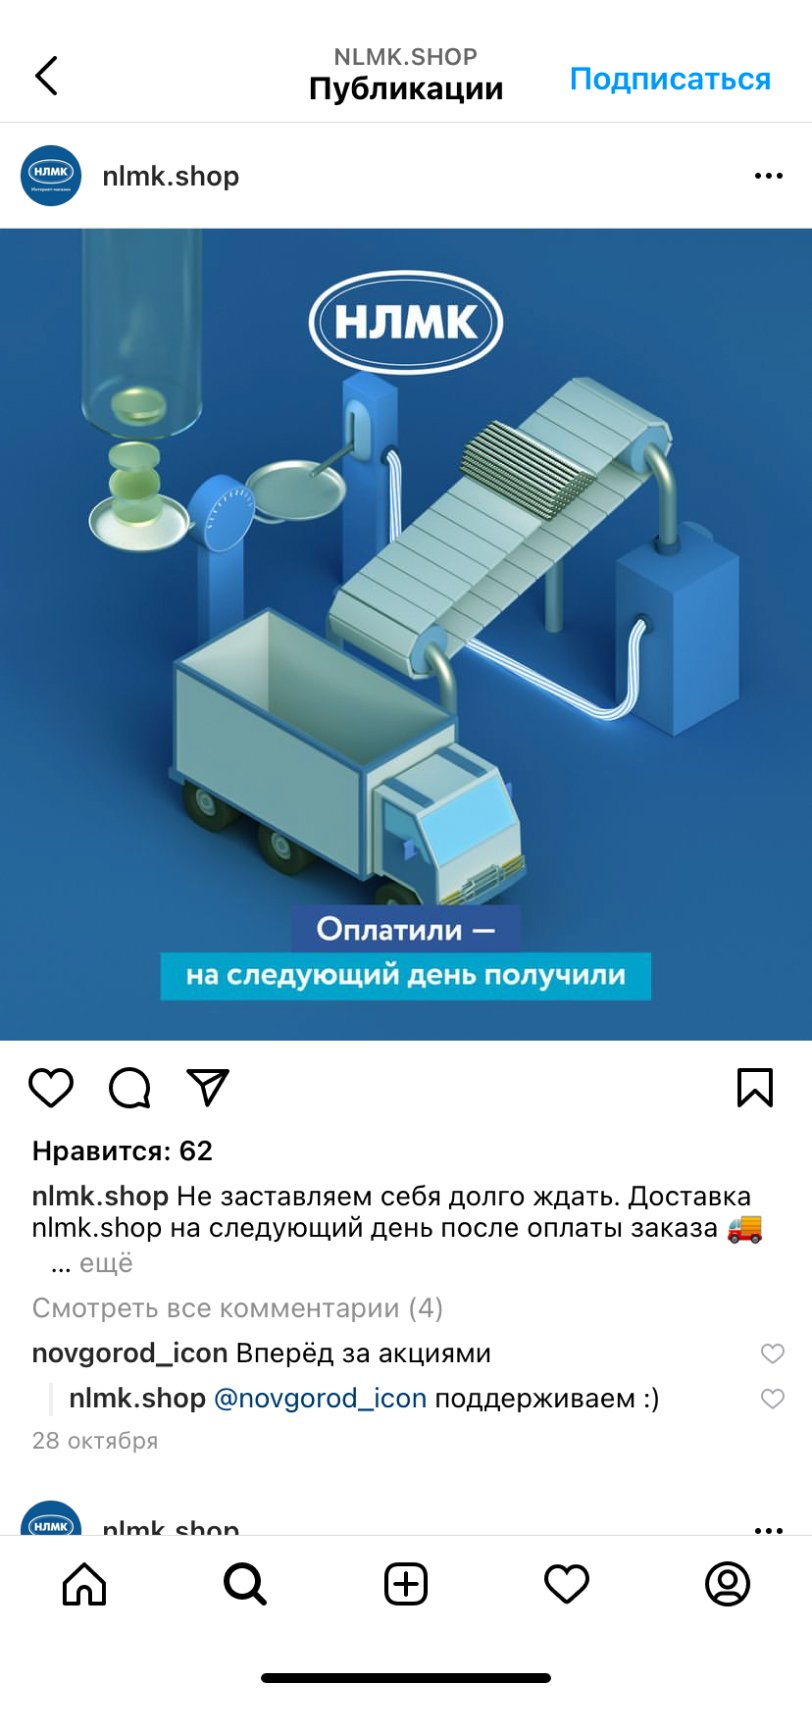 Посты в аккаунте интернет-магазина НЛМК в Instagram